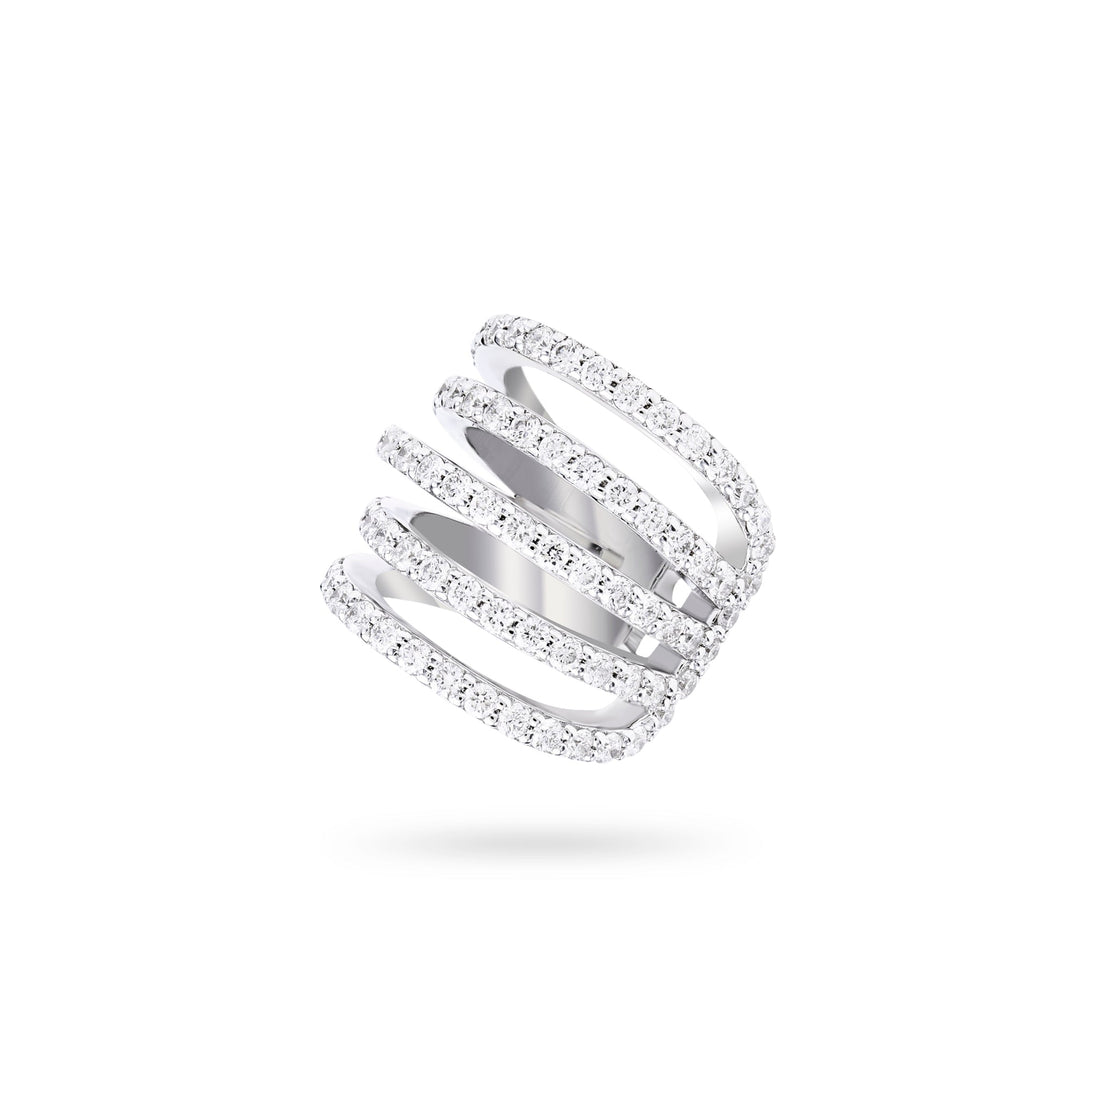 Jewelry Diamond Ear Cuffs | Earrings | 0.73 Cts. | 14K Gold - White / Single / Diamonds - earring Zengoda Shop